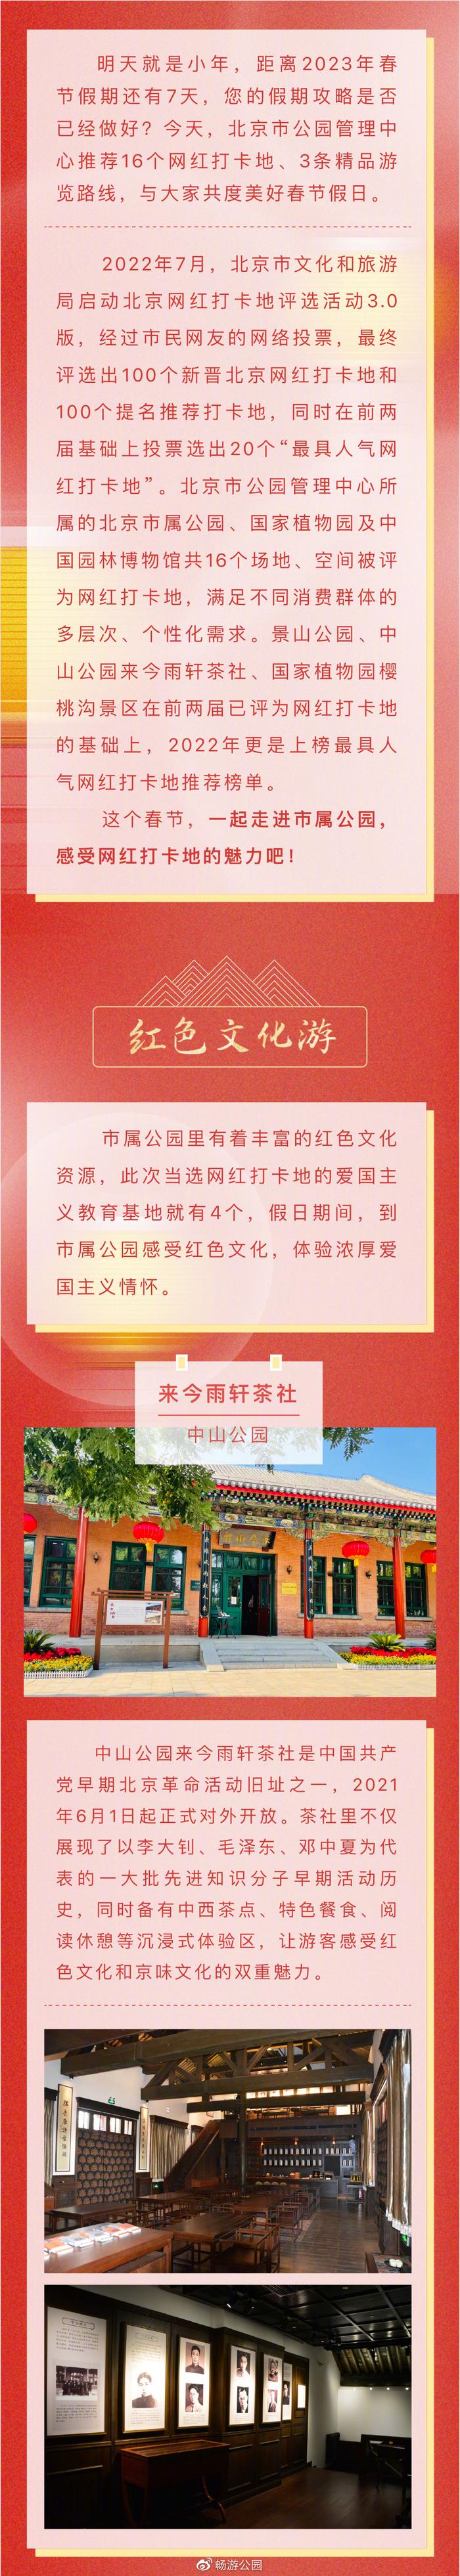 北京市属公园网红打卡地推荐 精品游览路线开启美好新春